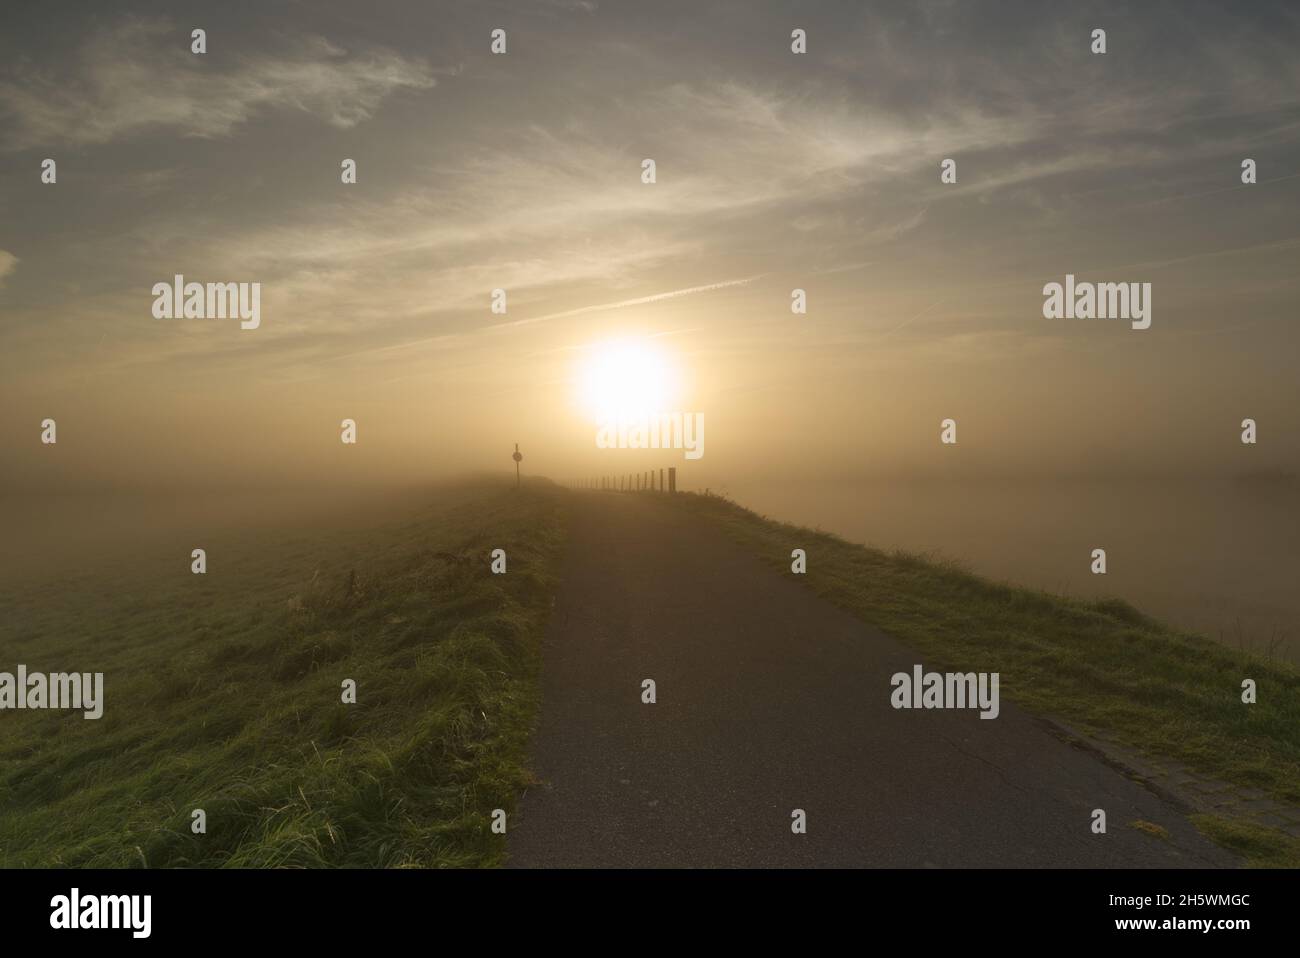 Sonnenaufgang im Nebel Stock Photo